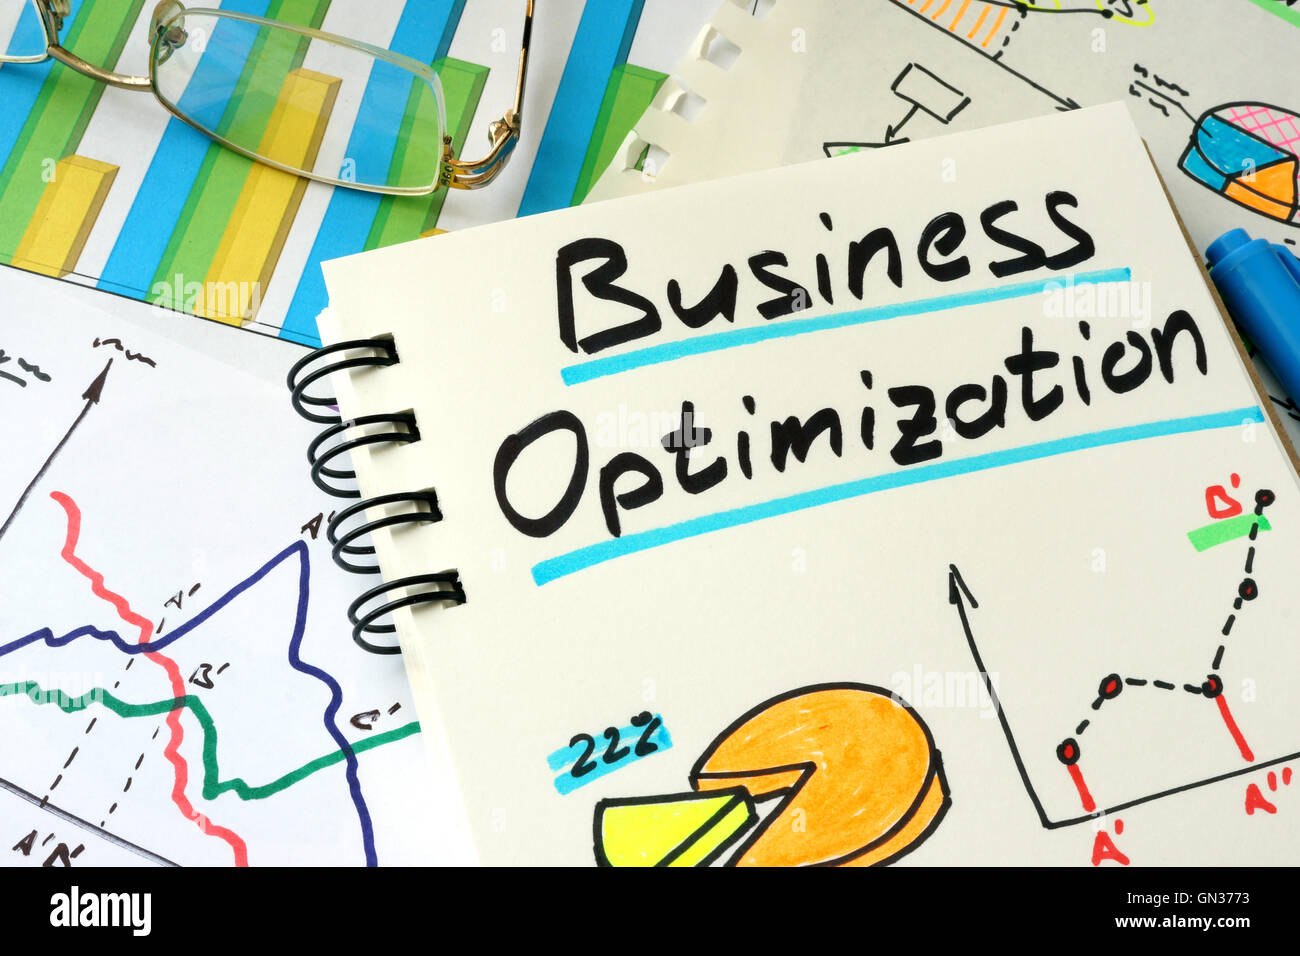 Business-Optimierung auf ein Notepad-Blatt geschrieben. Stockfoto